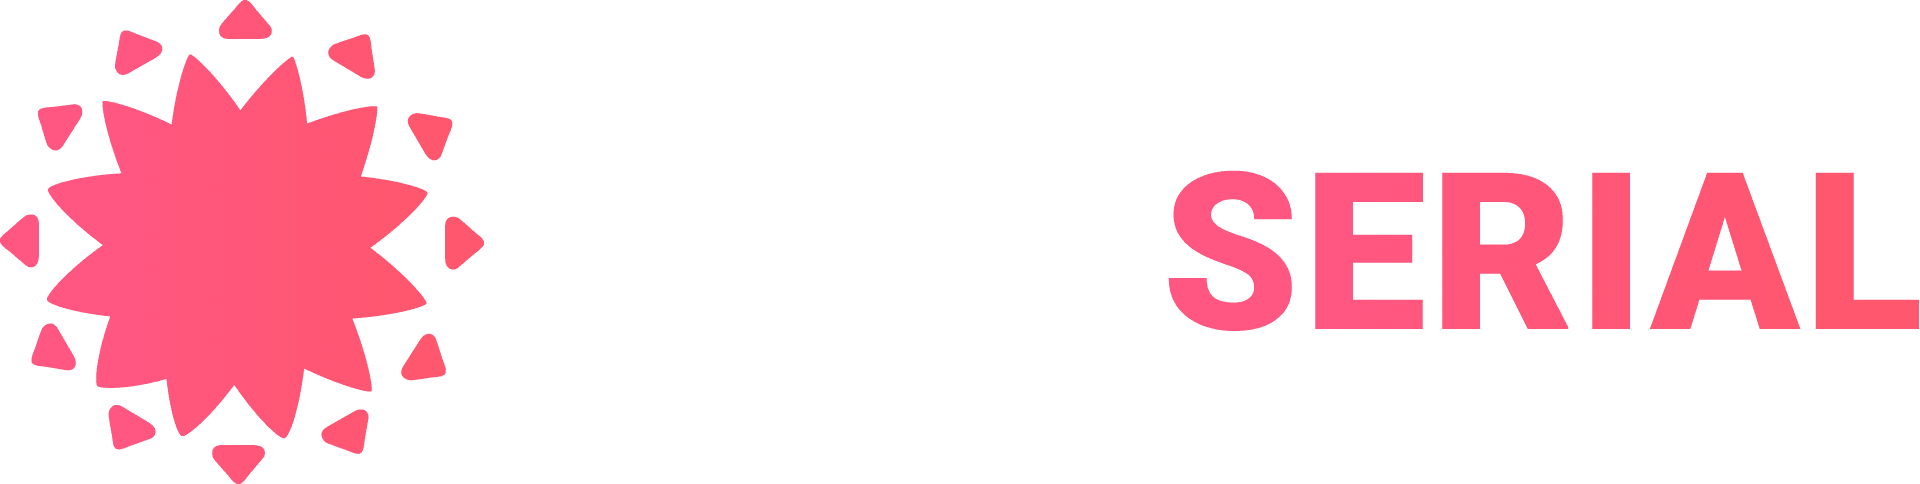 Логотип turkserial.org